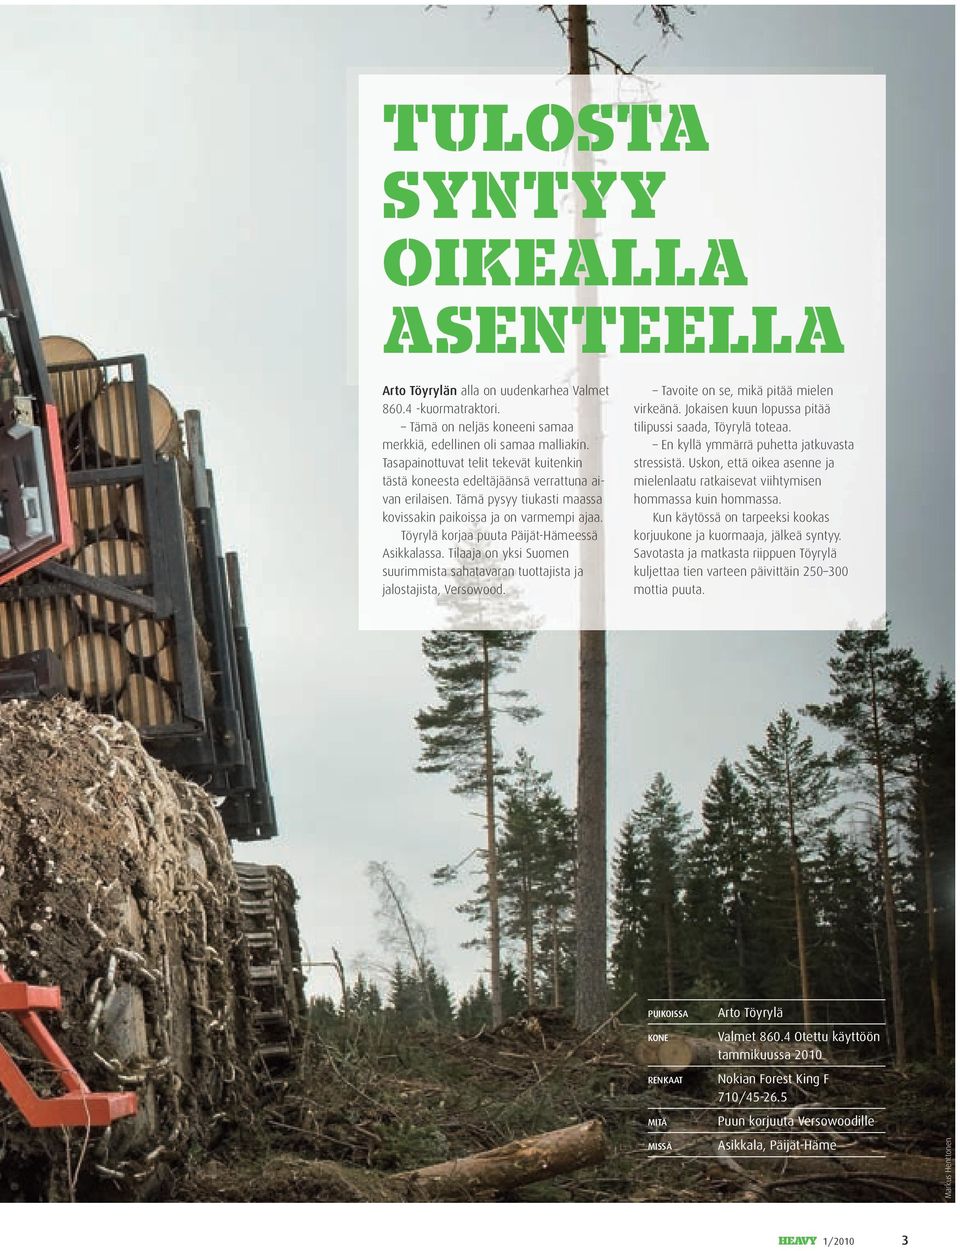 Töyrylä korjaa puuta Päijät-Hämeessä Asikkalassa. Tilaaja on yksi Suomen suurimmista sahatavaran tuottajista ja jalostajista, Versowood. Tavoite on se, mikä pitää mielen virkeänä.